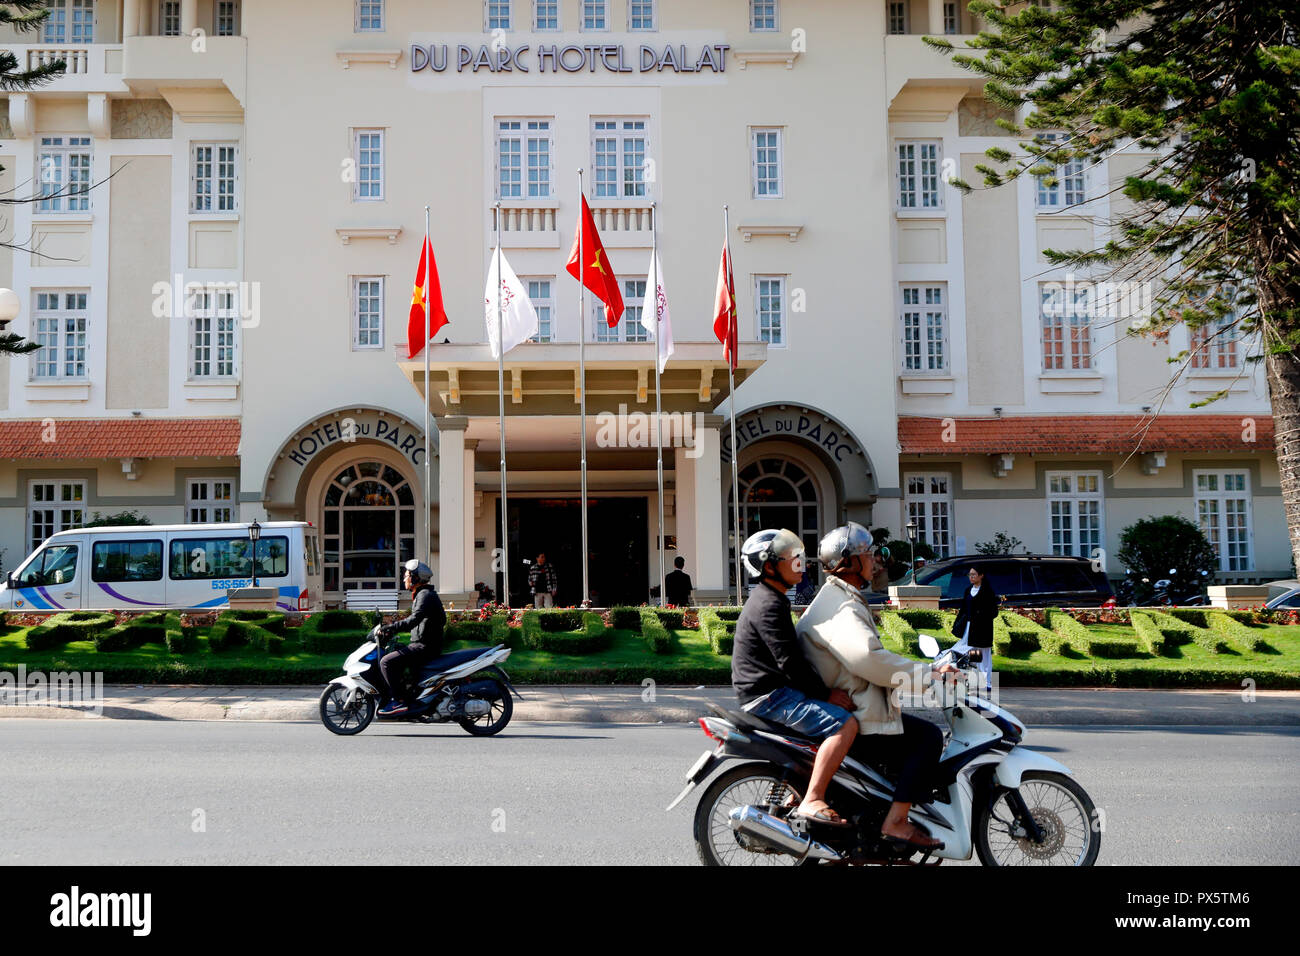 Du Park Hotel Dalat data de la época colonial francesa. Dalat. Vietnam. Foto de stock